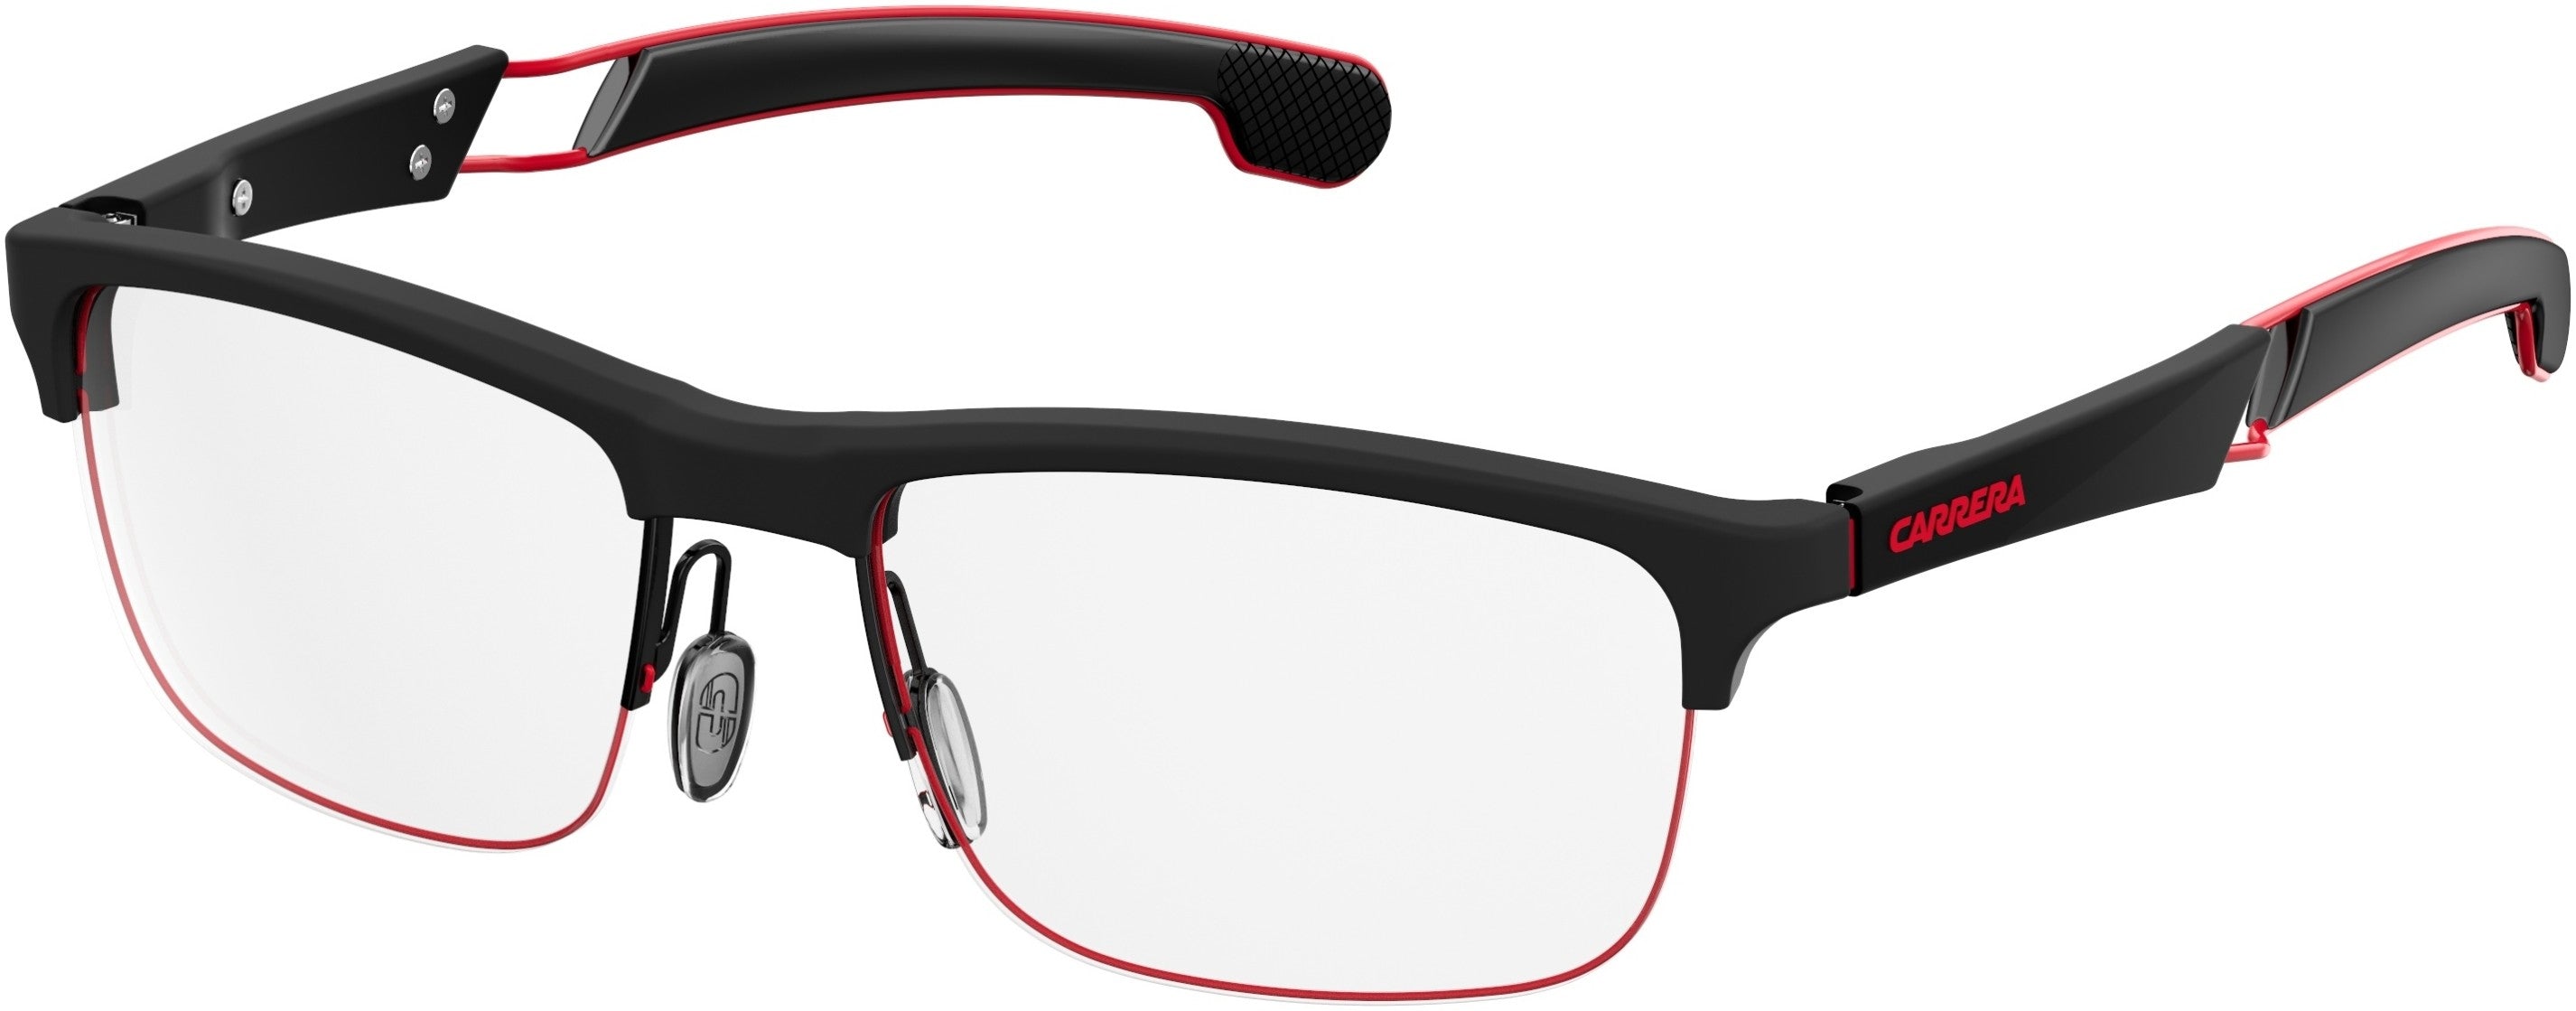  Carrera 4403/V Rectangular Eyeglasses 0003-0003  Matte Black (00 Demo Lens)